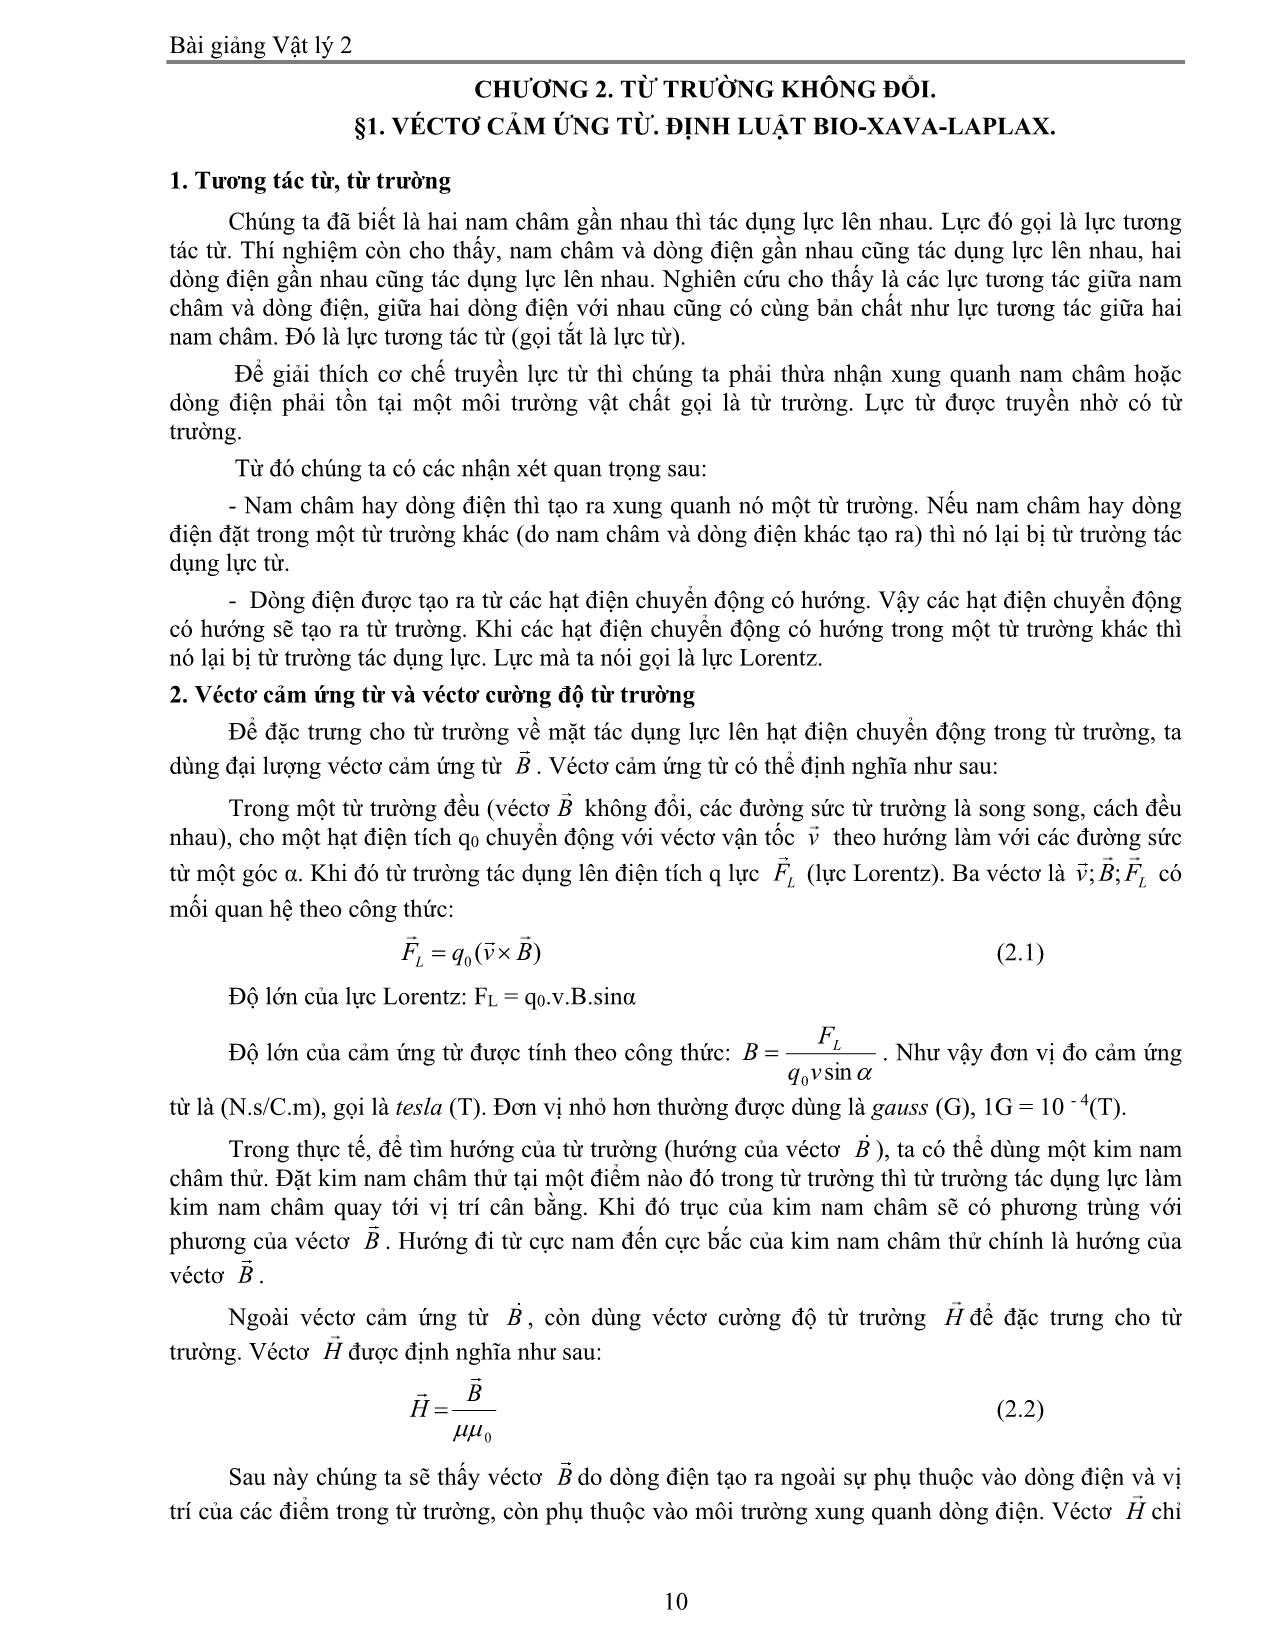 Giáo trình Vật lý 2 trang 10